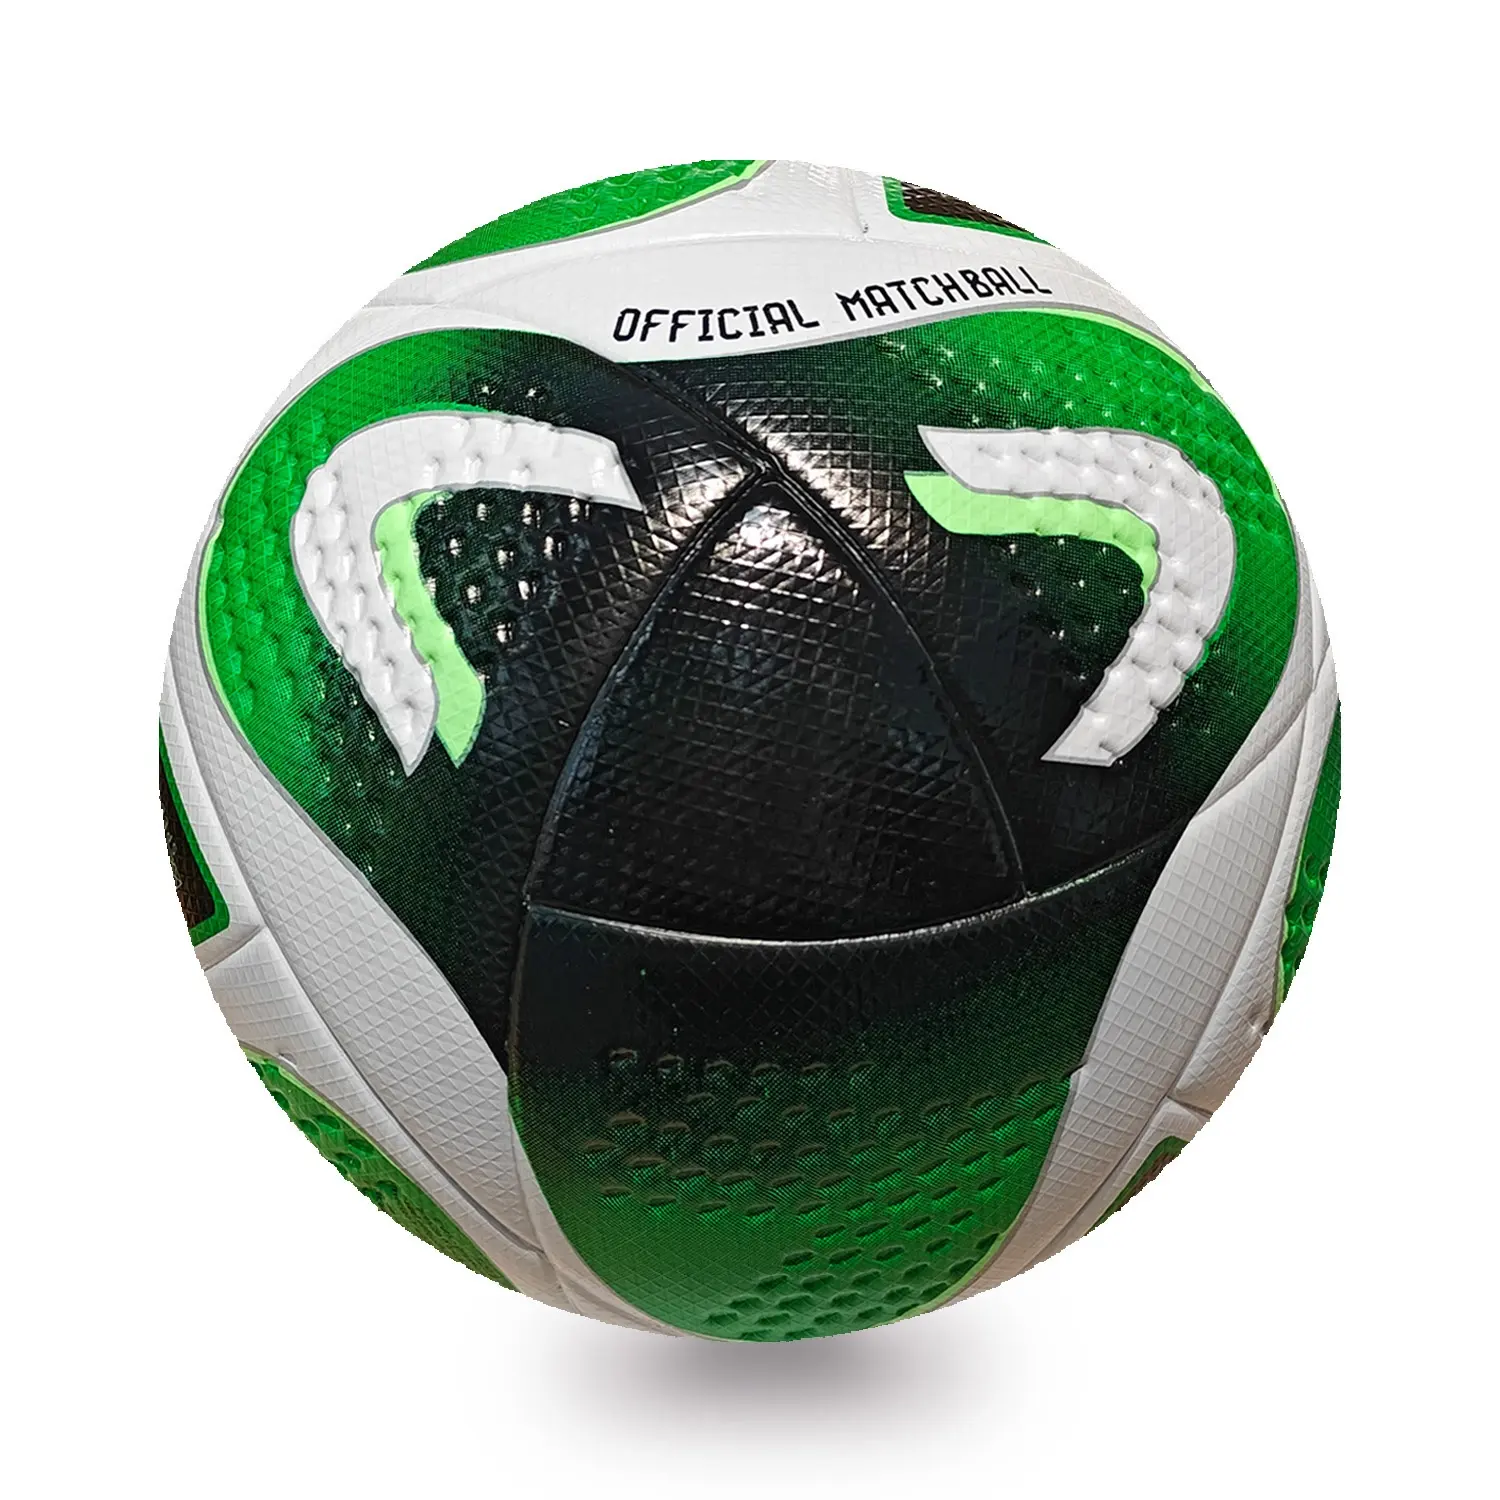 كرة قدم مقاس 5 مصنوعة من مادة Tpu عالية الجودة ومصنعة من مواد صناعية مع شعار مخصص كرة قدم للعب داخل المنزل أو في الهواء الطلق